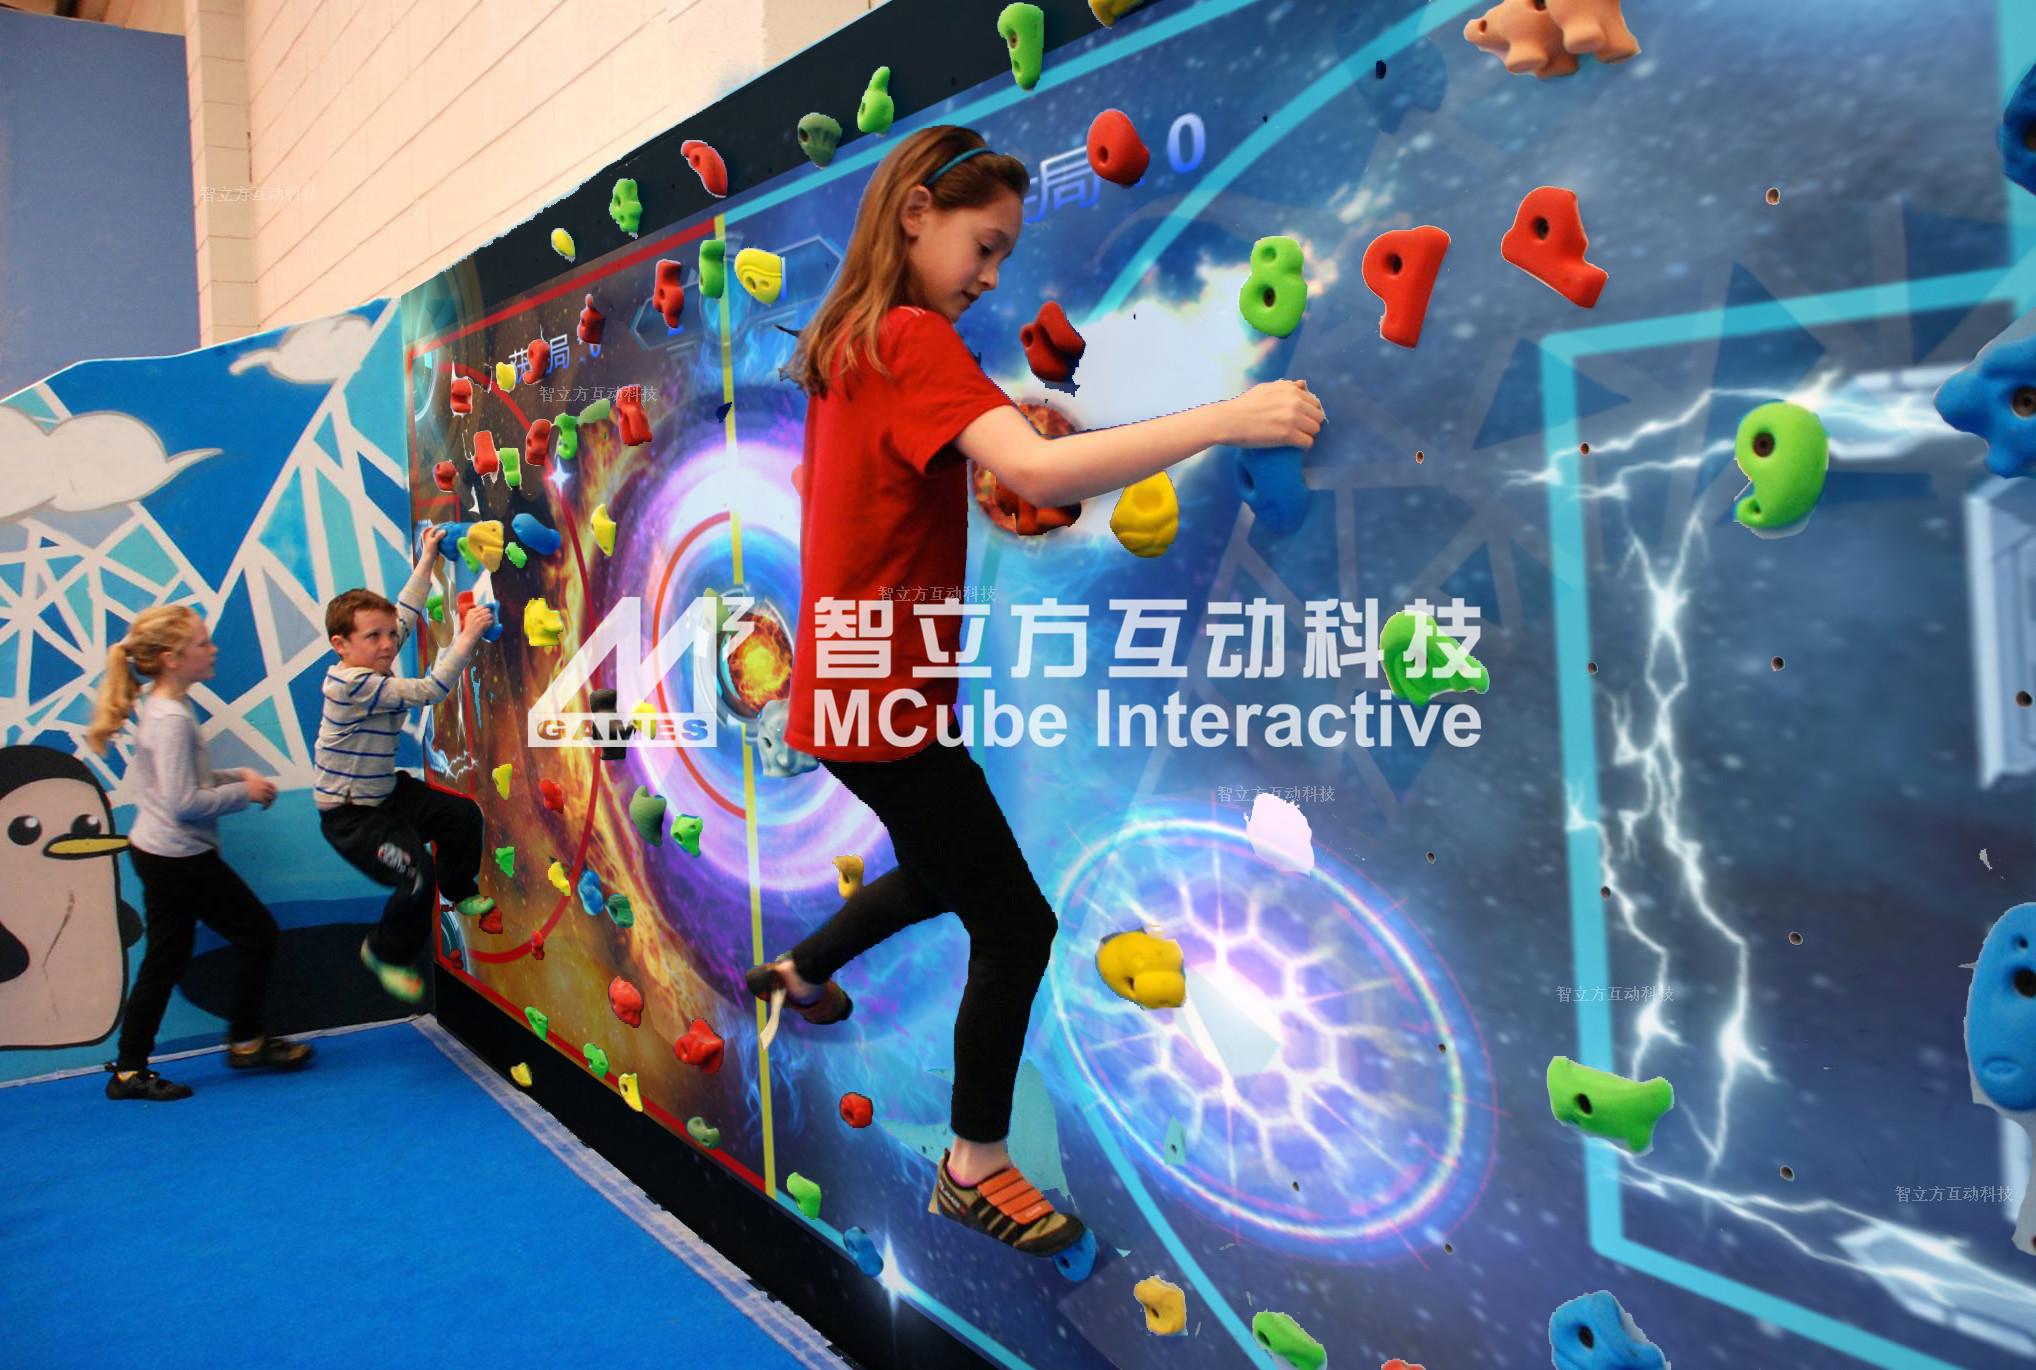 智立方互动投影攀爬墙—儿童运动馆乐园攀爬游戏升级趋势！